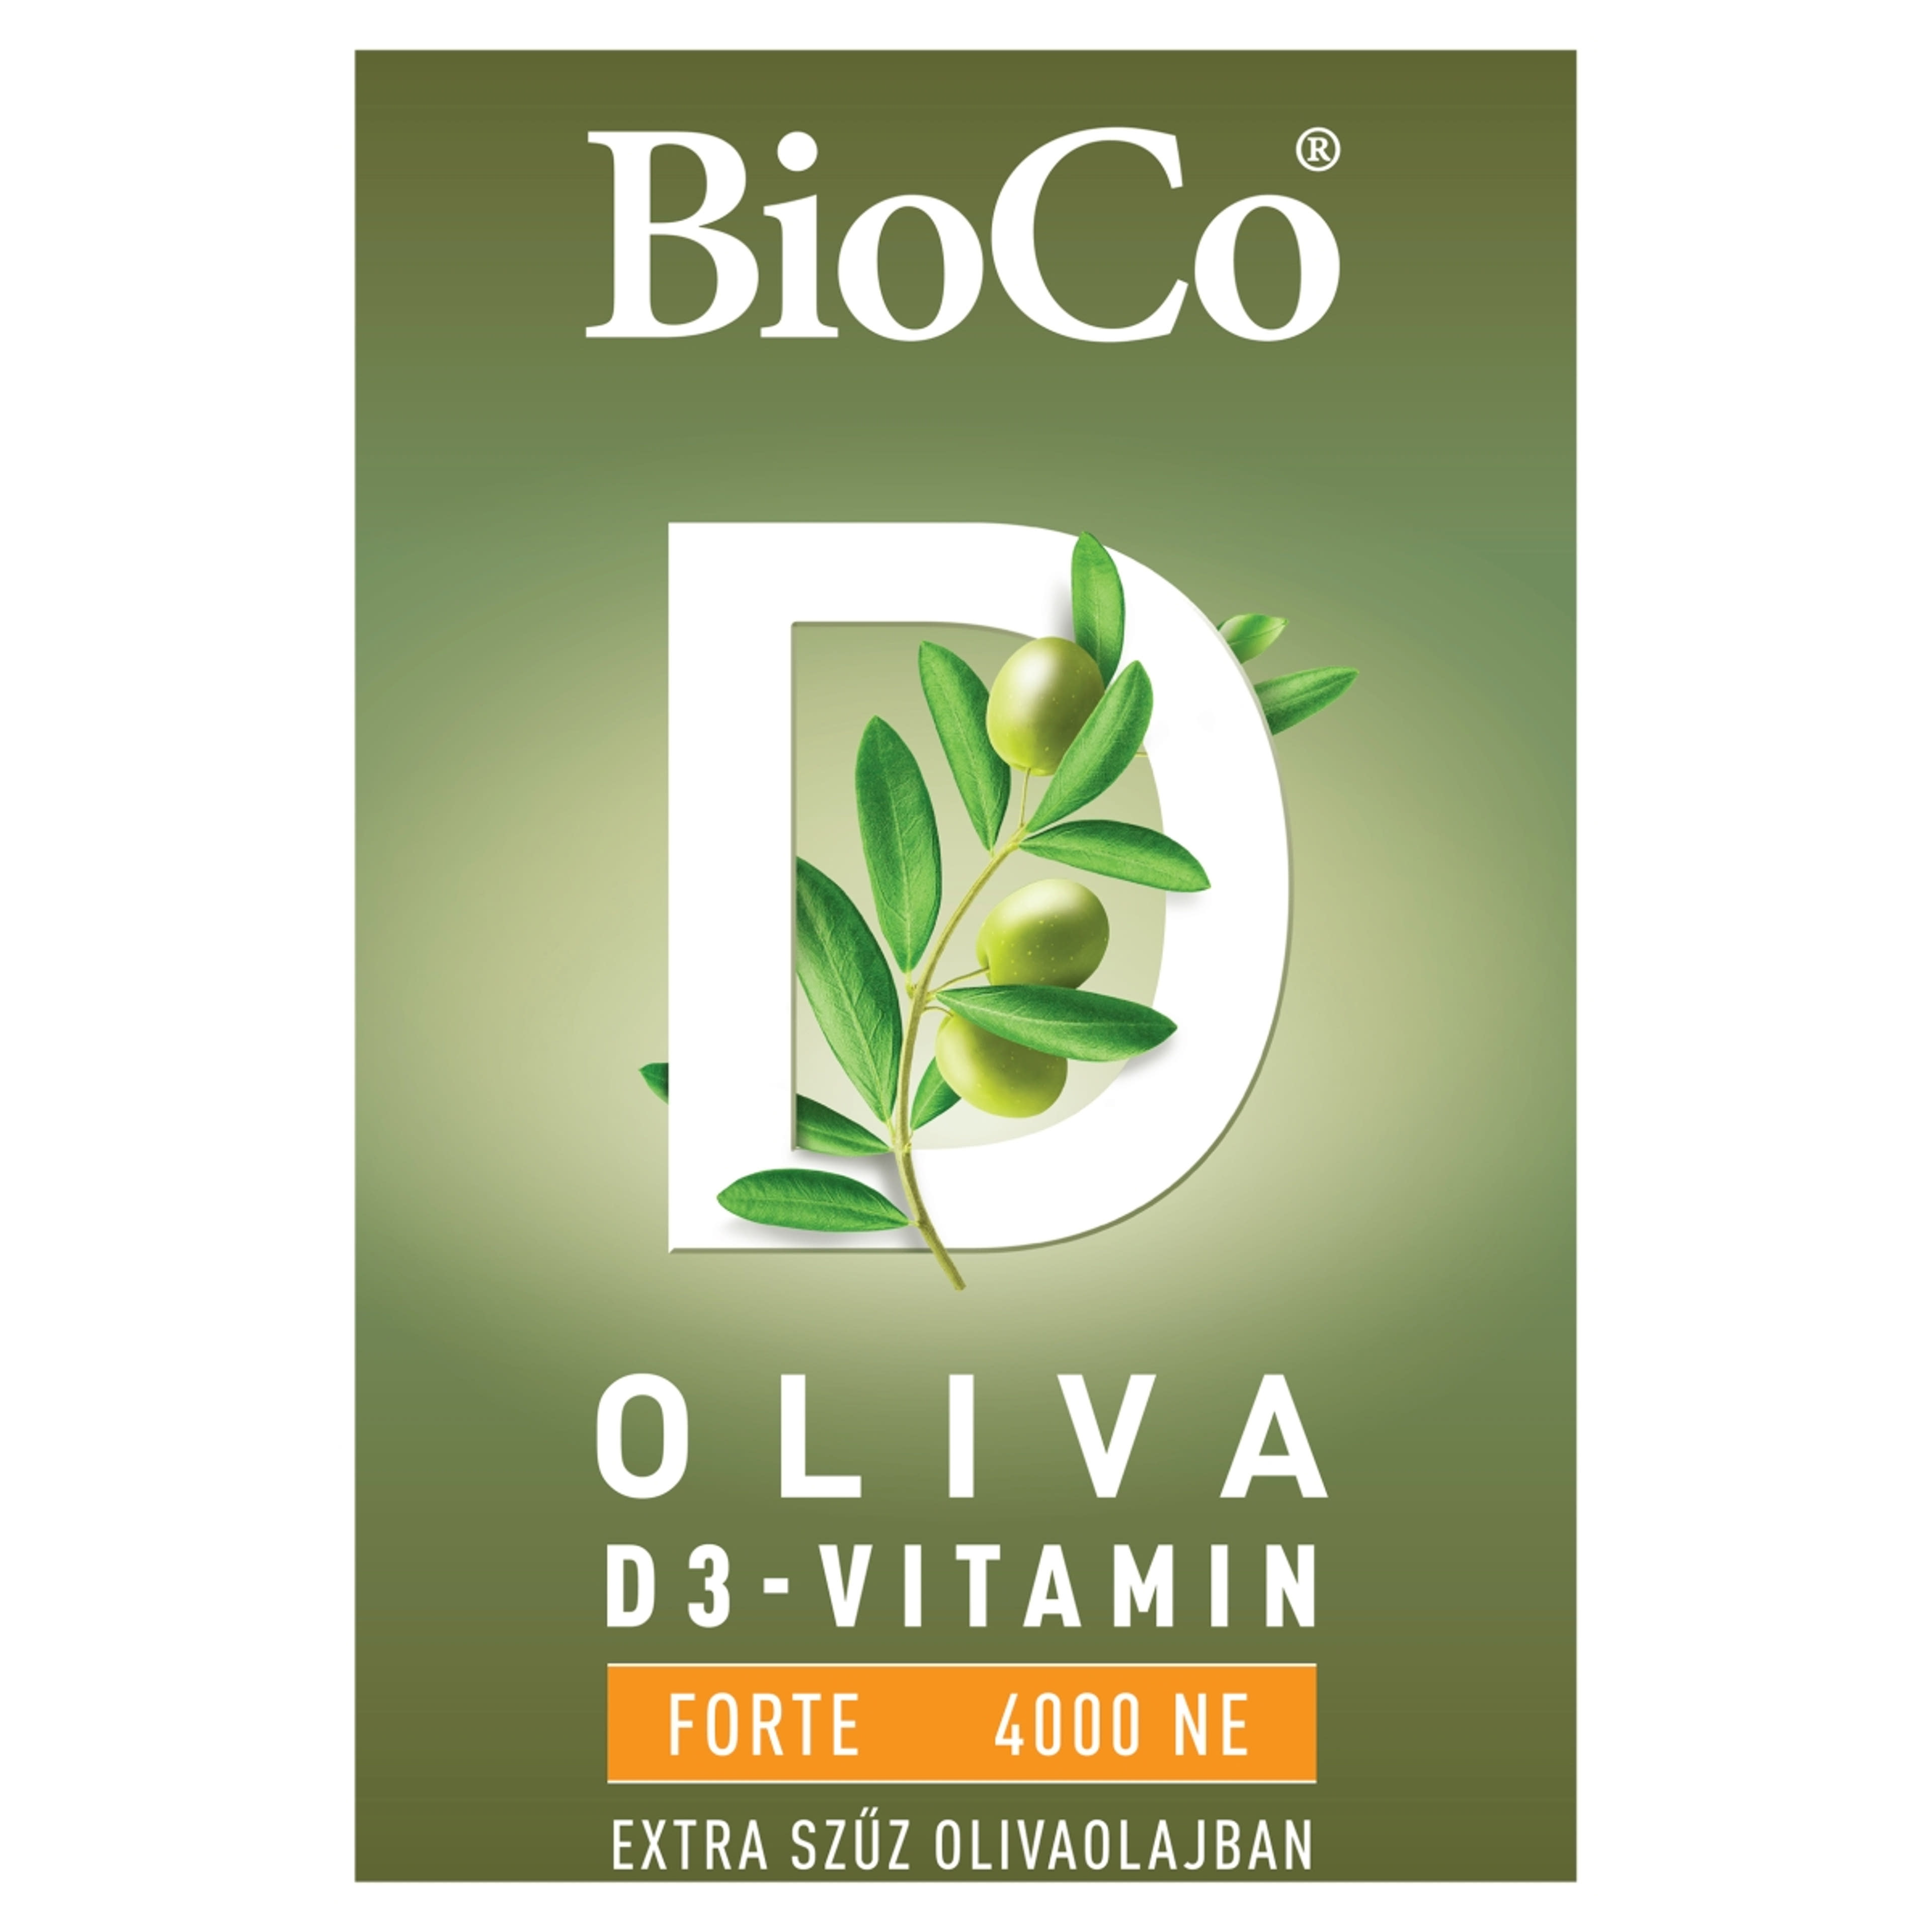 BioCo Oliva D3-vitamin Forte 4000 NE étrend-kiegészítő lágyzselatin kapszula - 60 db